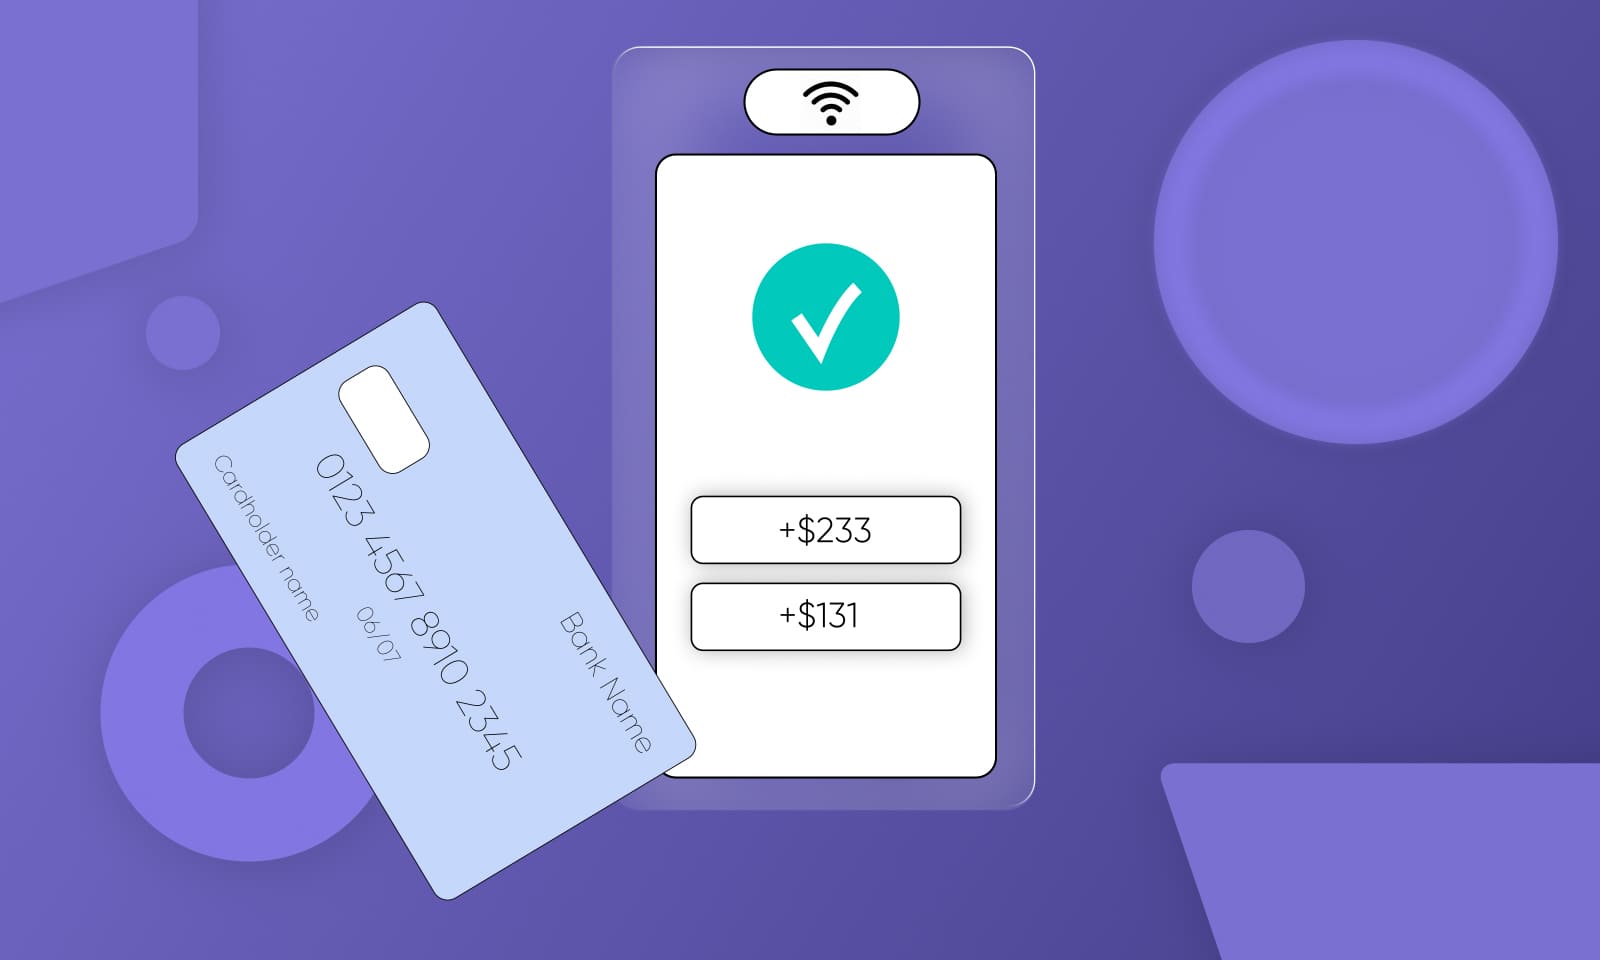 2Checkout помогает бизнесу принимать онлайн-платежи с банковских карт в 200 странах.